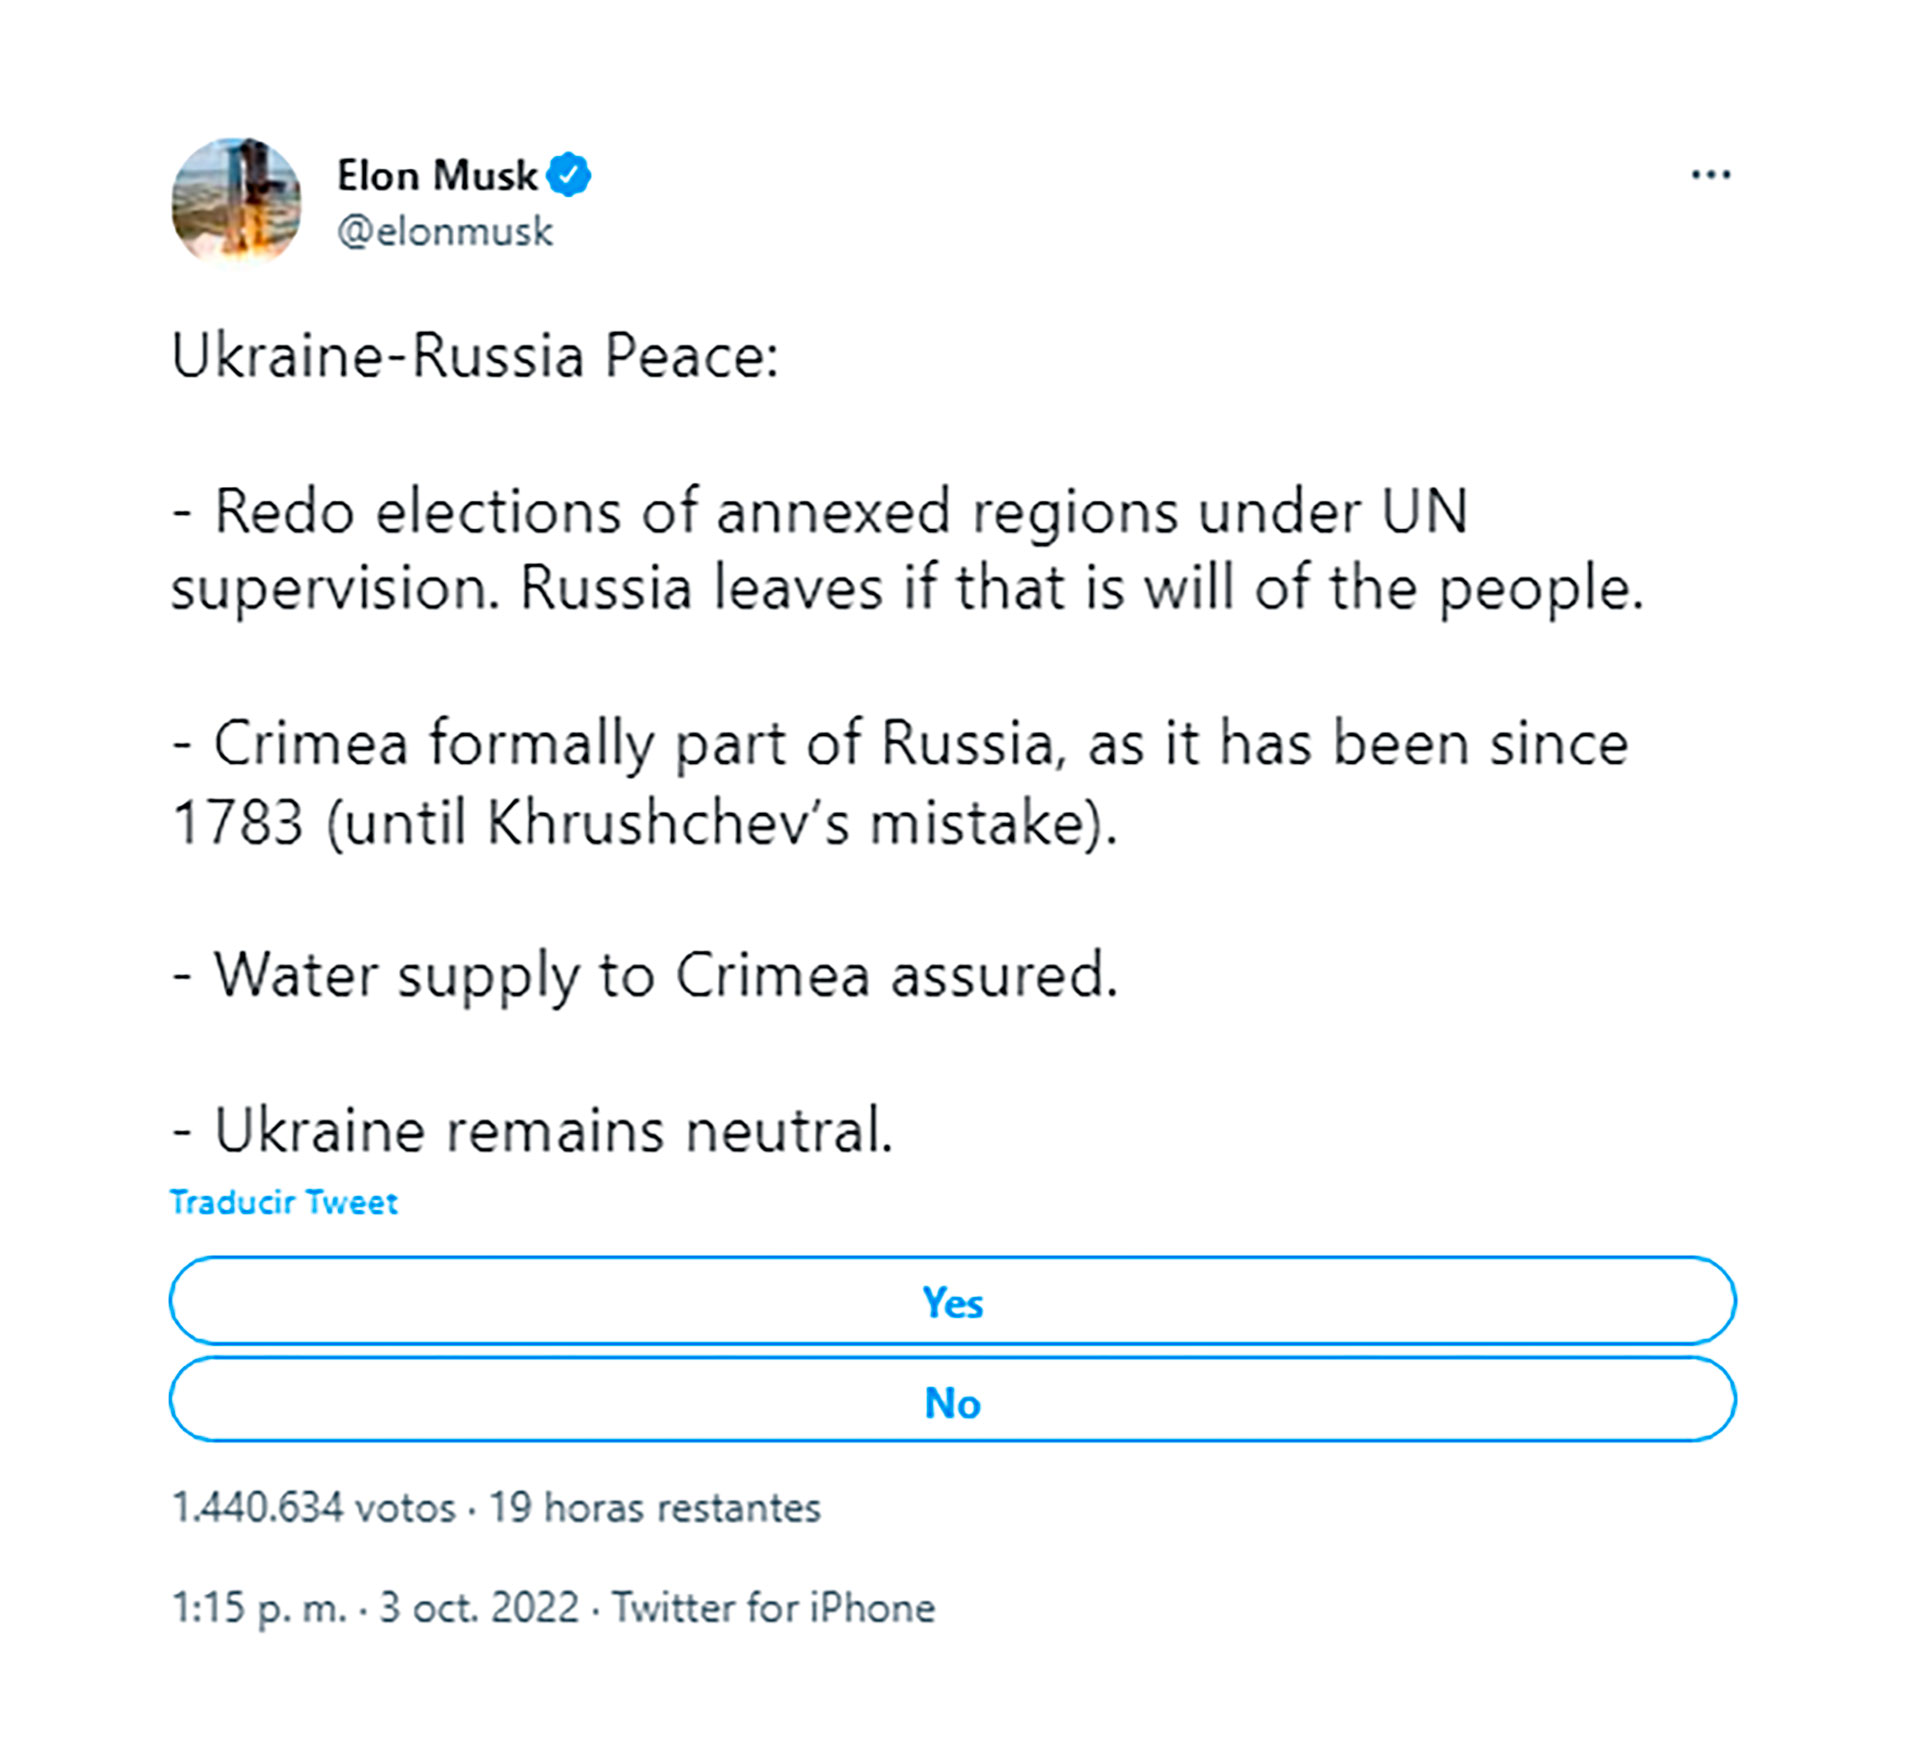 Tuit de Elon Musk sobre el fin al conflicto entre Rusia y Ucrania (Twitter: @elonmusk)